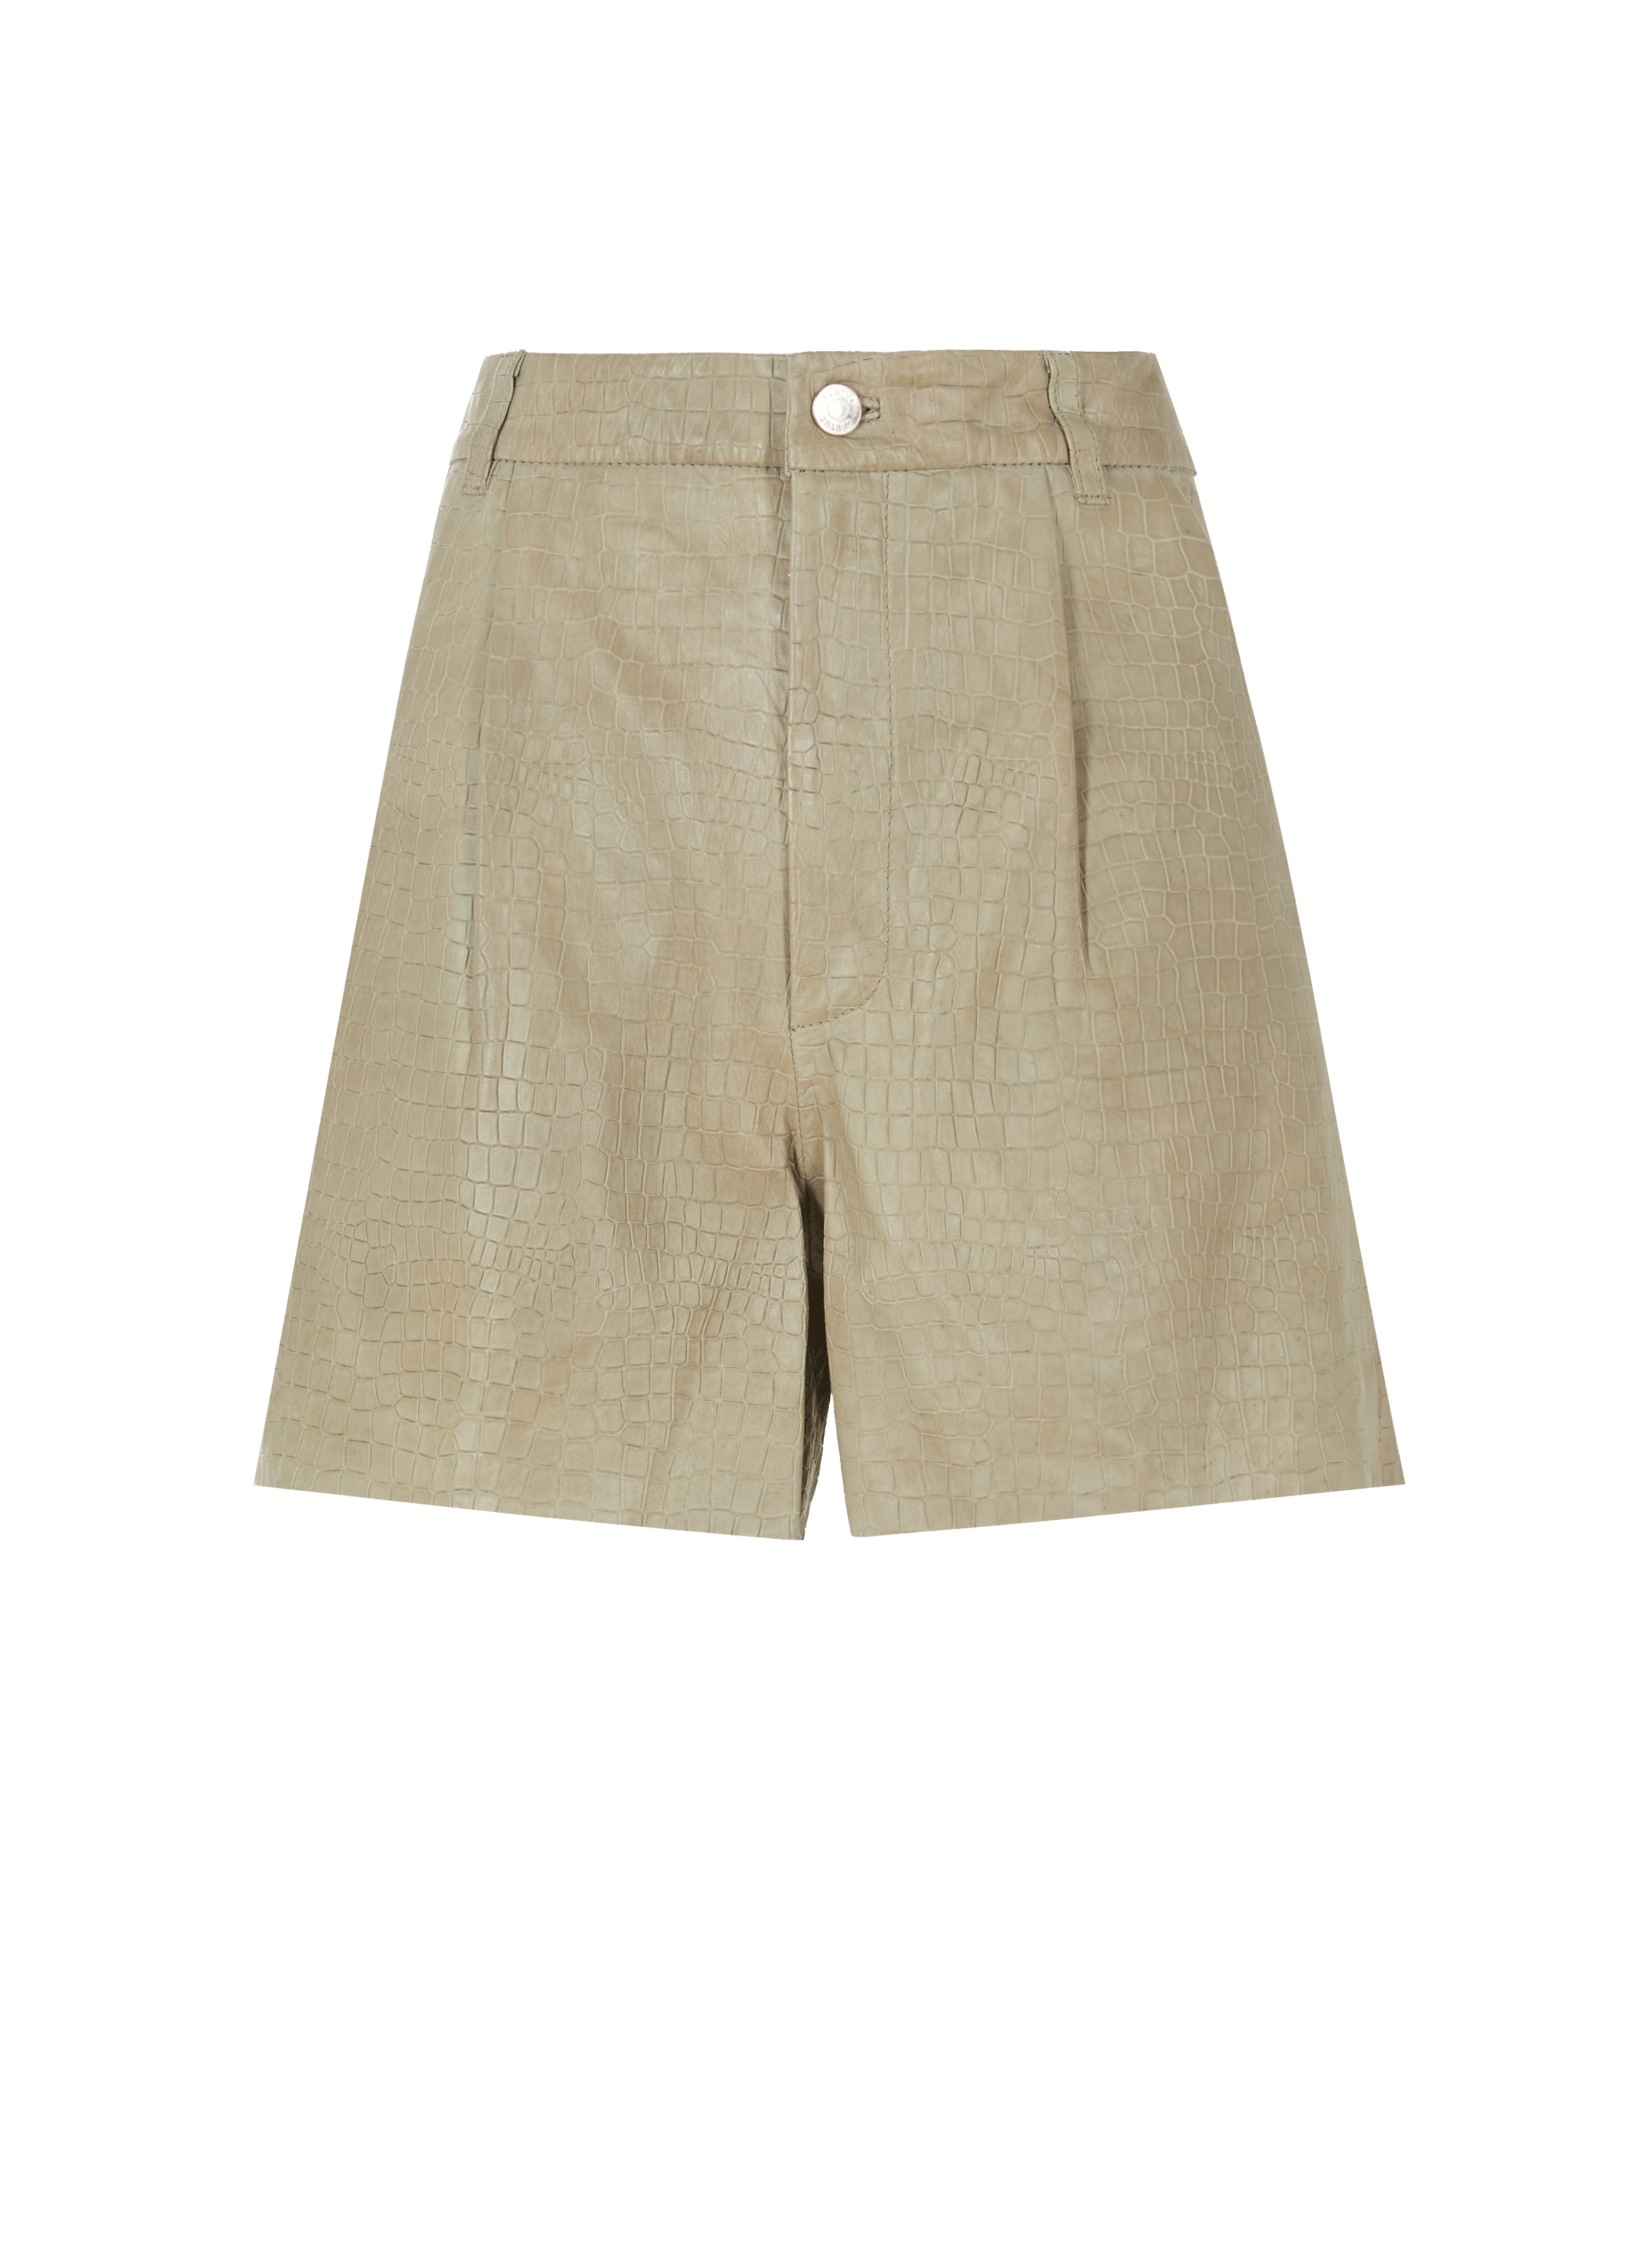 Gestuz Petrali Crocodile Embossed Leather Shorts Womens Clothing Shorts Mini shorts 